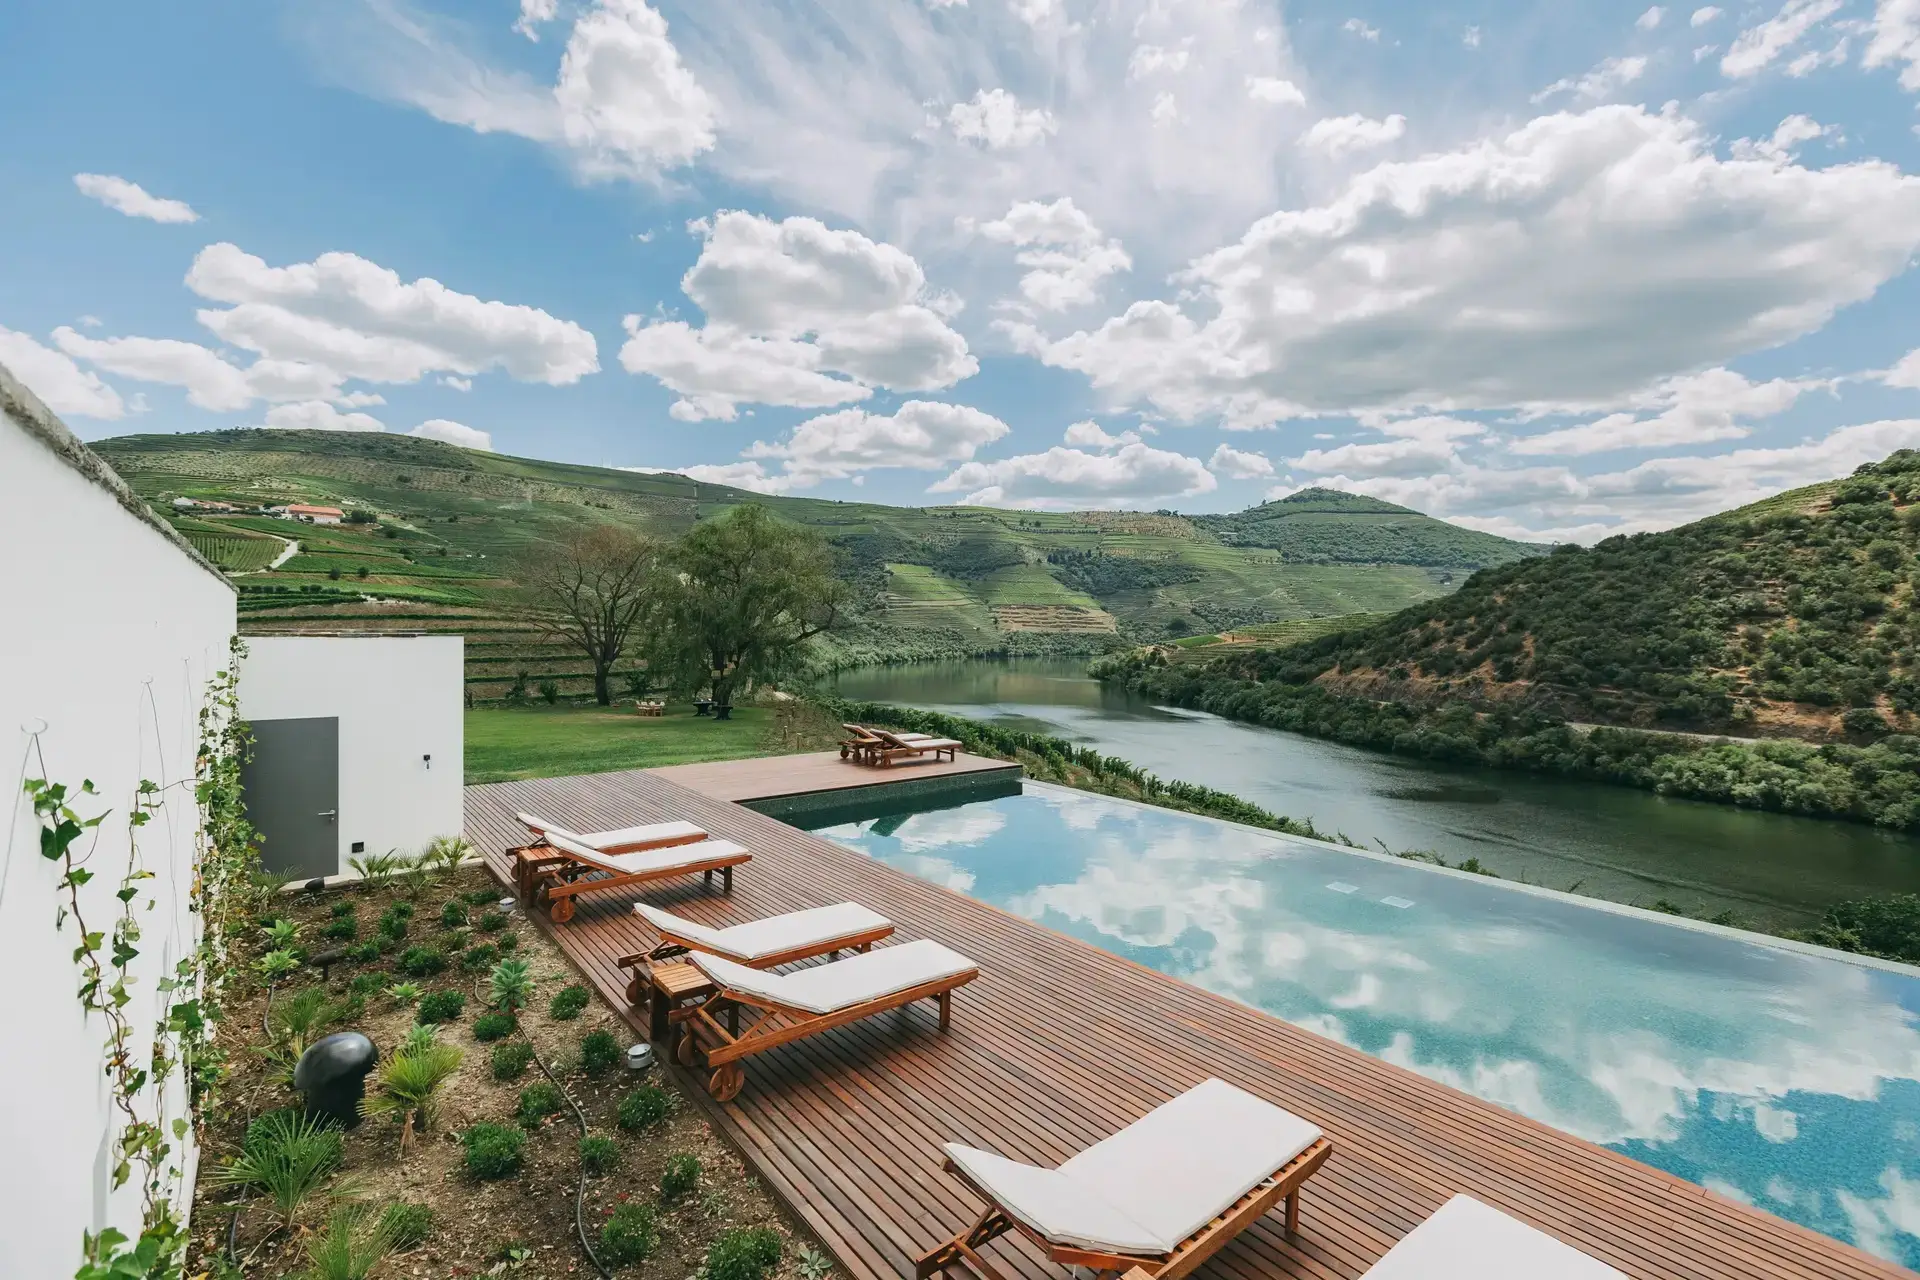 Ventozelo Hotel & Quinta - Entre os abundantes vinhedos de uma das maiores quintas do Douro encaixa-se esta piscina inspiradora, envolvida por socalcos que prolongam a vista até ao rio.